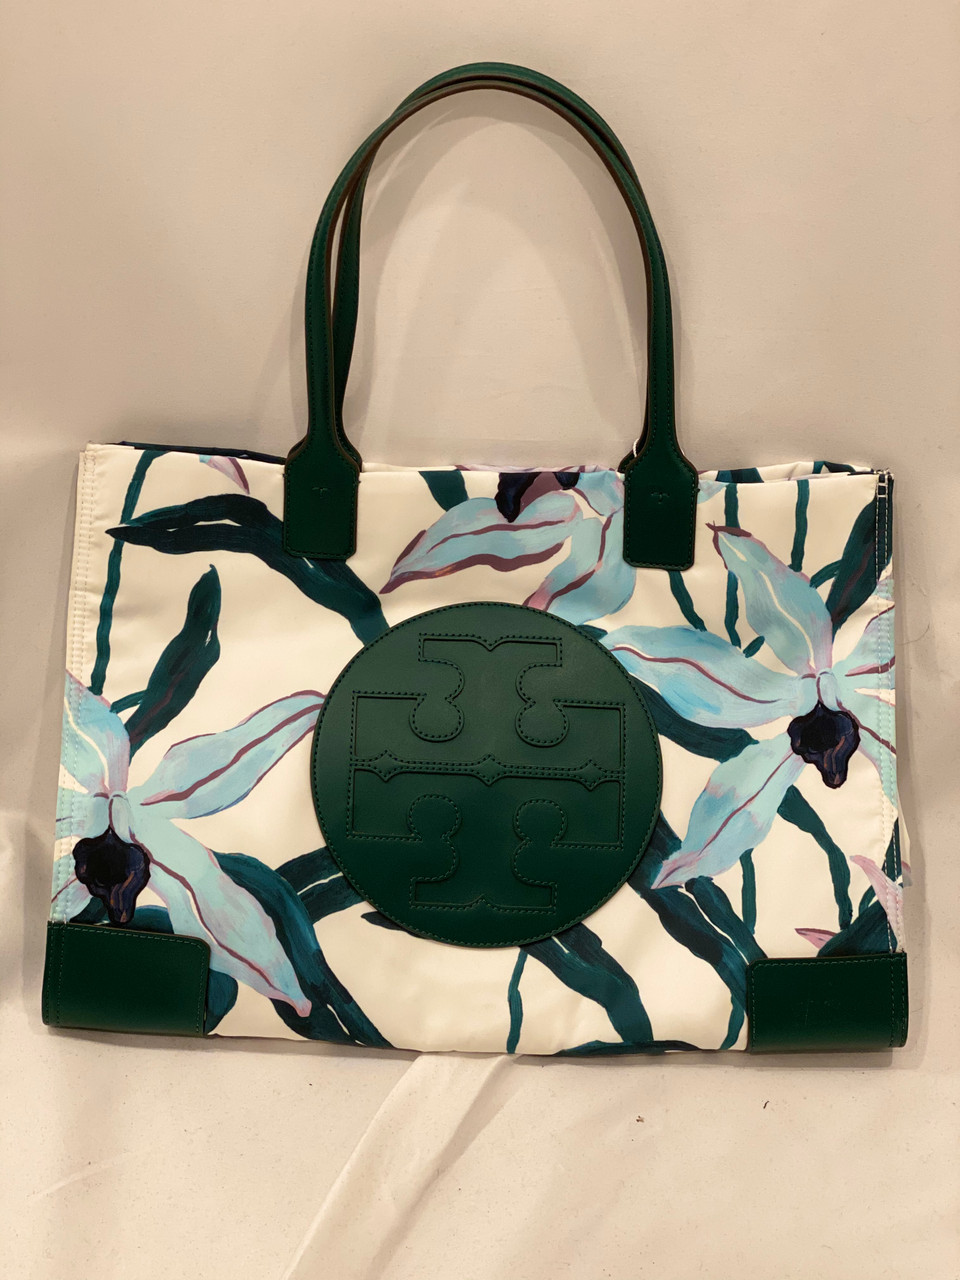 Tory Burch Ella floral Tote Bag Handbag, Women's Fashion, Bags